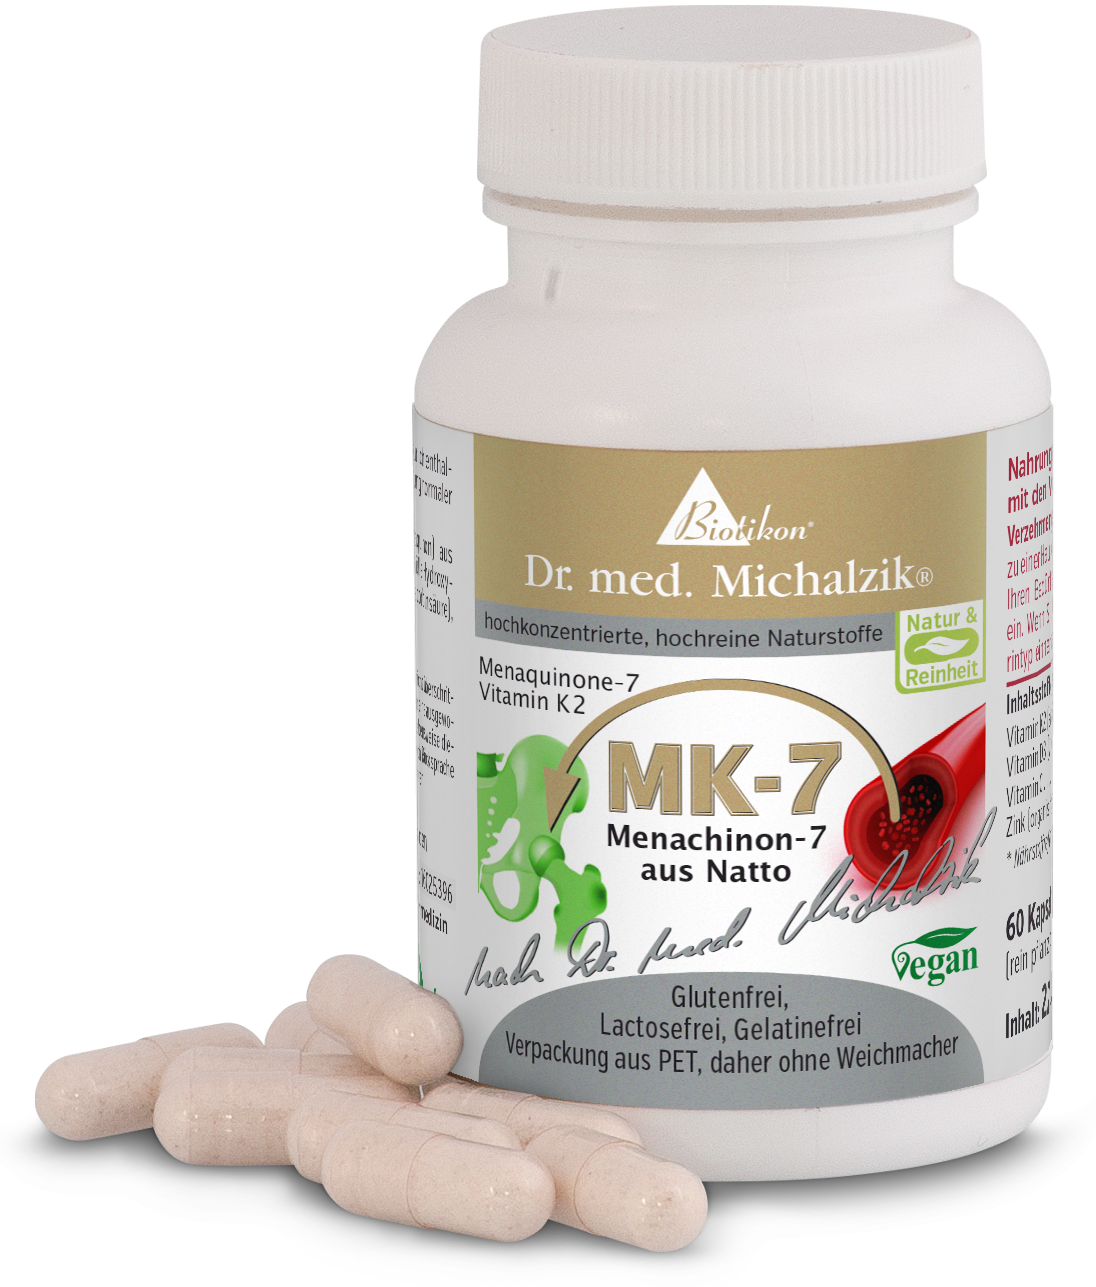 Vitamin K2- MK-7